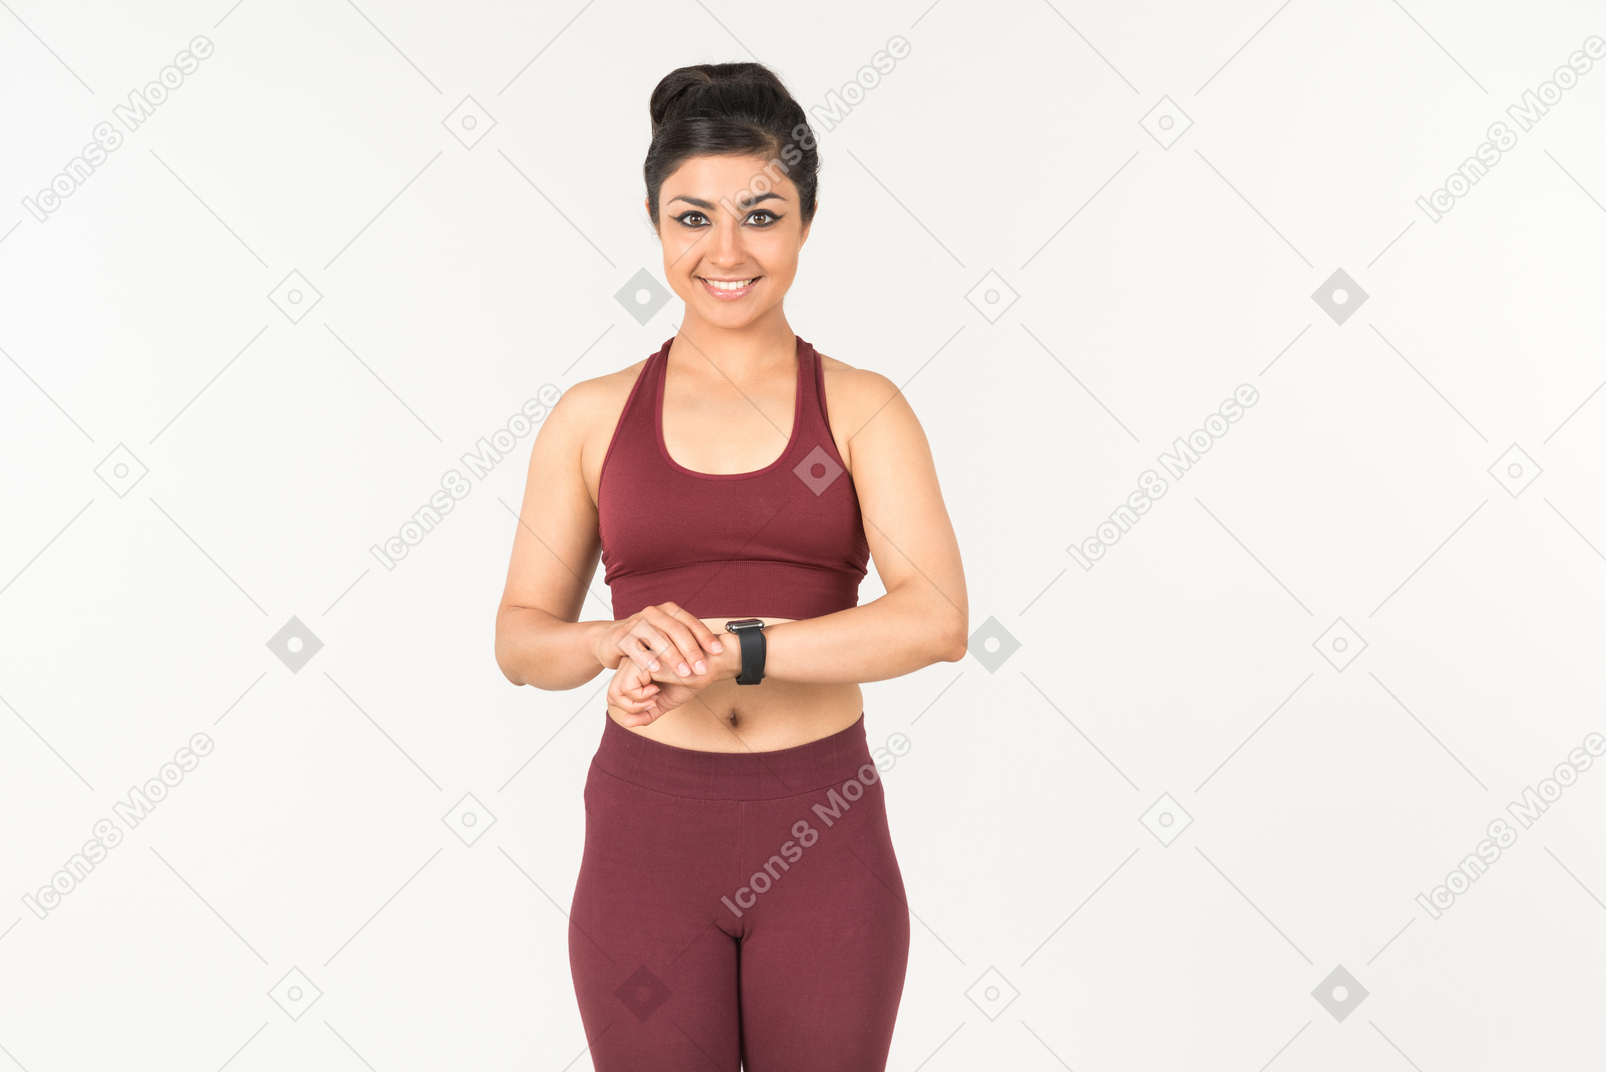 Ragazza indiana in sporstwear controllo fitness tracker